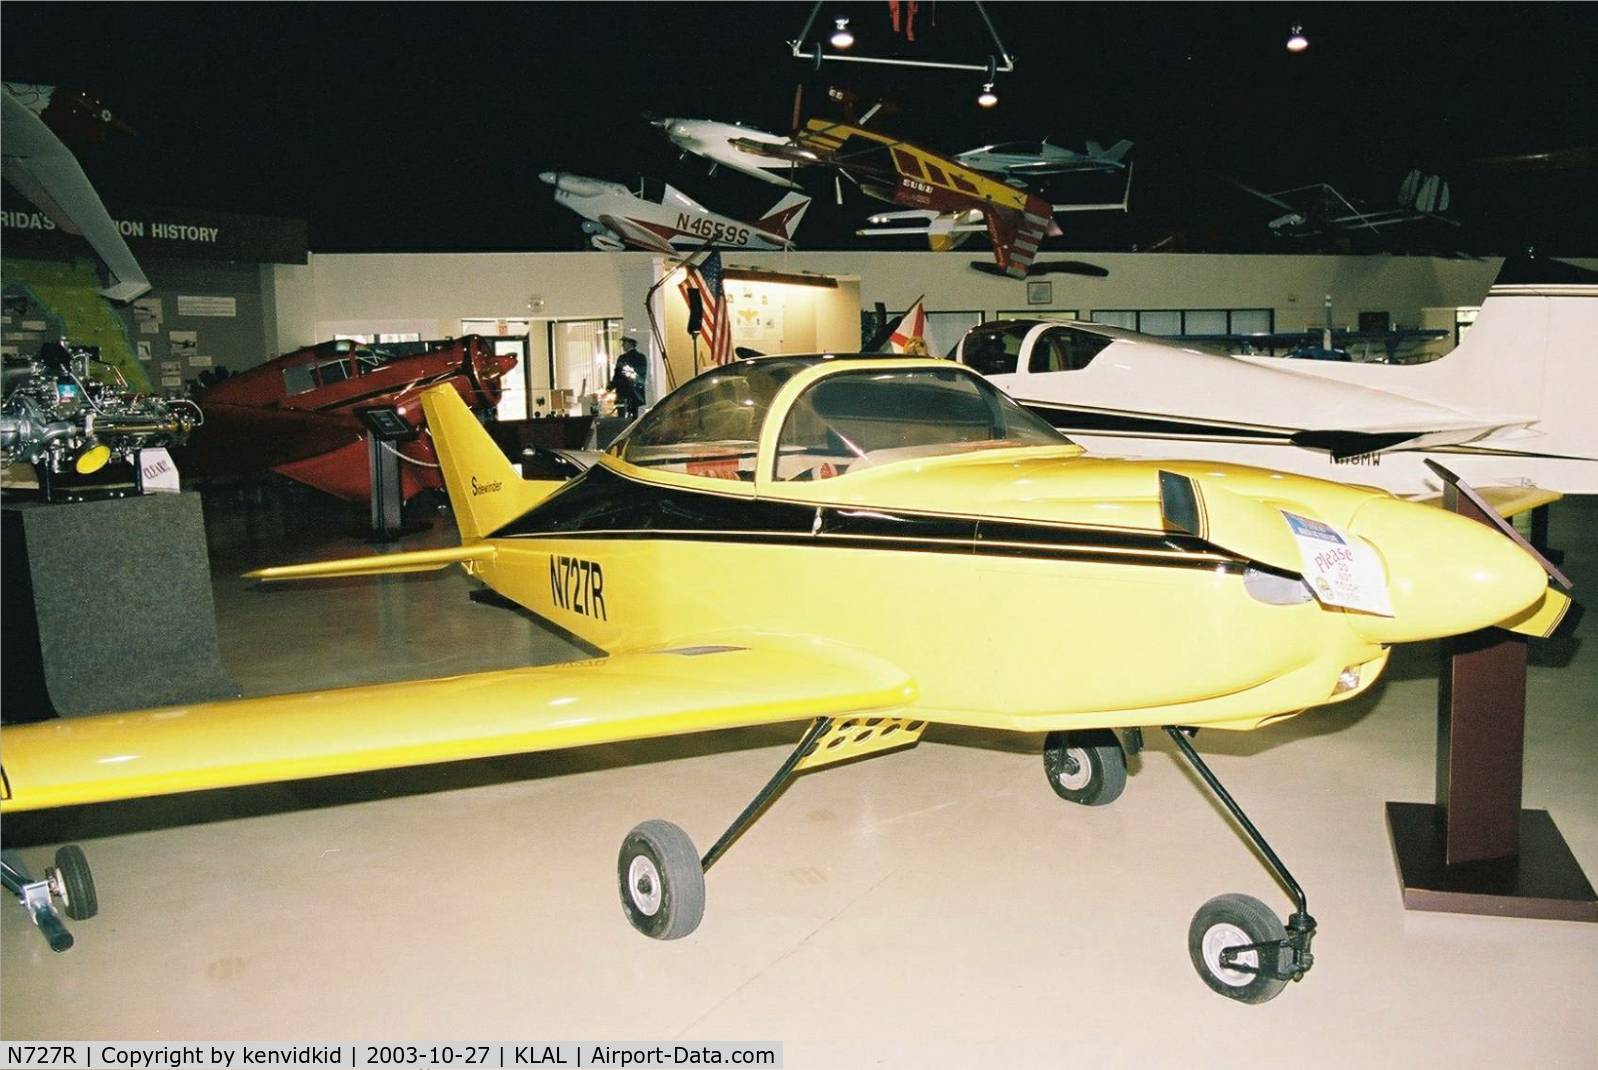 N727R, 1976 Smyth Sidewinder C/N 212191, At Lakeland EAA Museum.